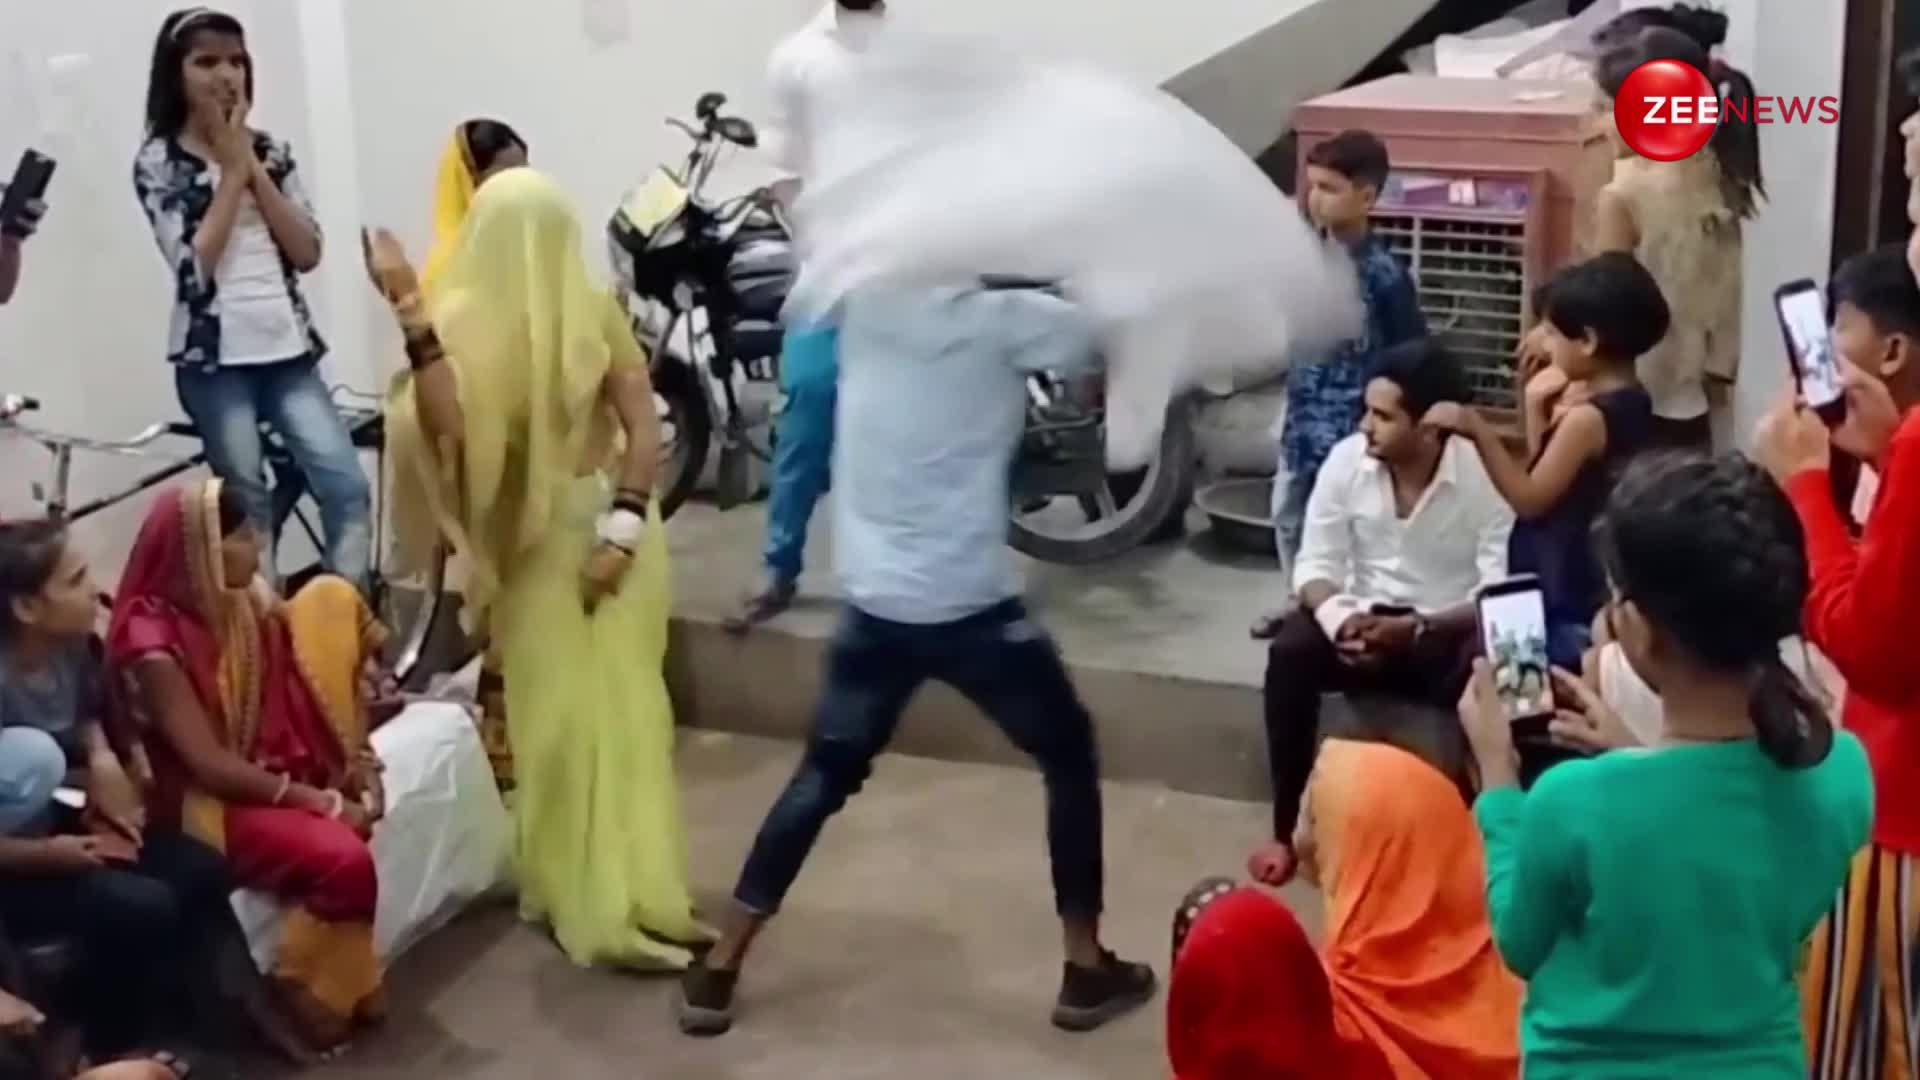 Up के गांव की बहू ने शादी के बाद अपने देवर संग किया धमाकेदार डांस, वीडियो देख क्रेजी हुई पब्लिक